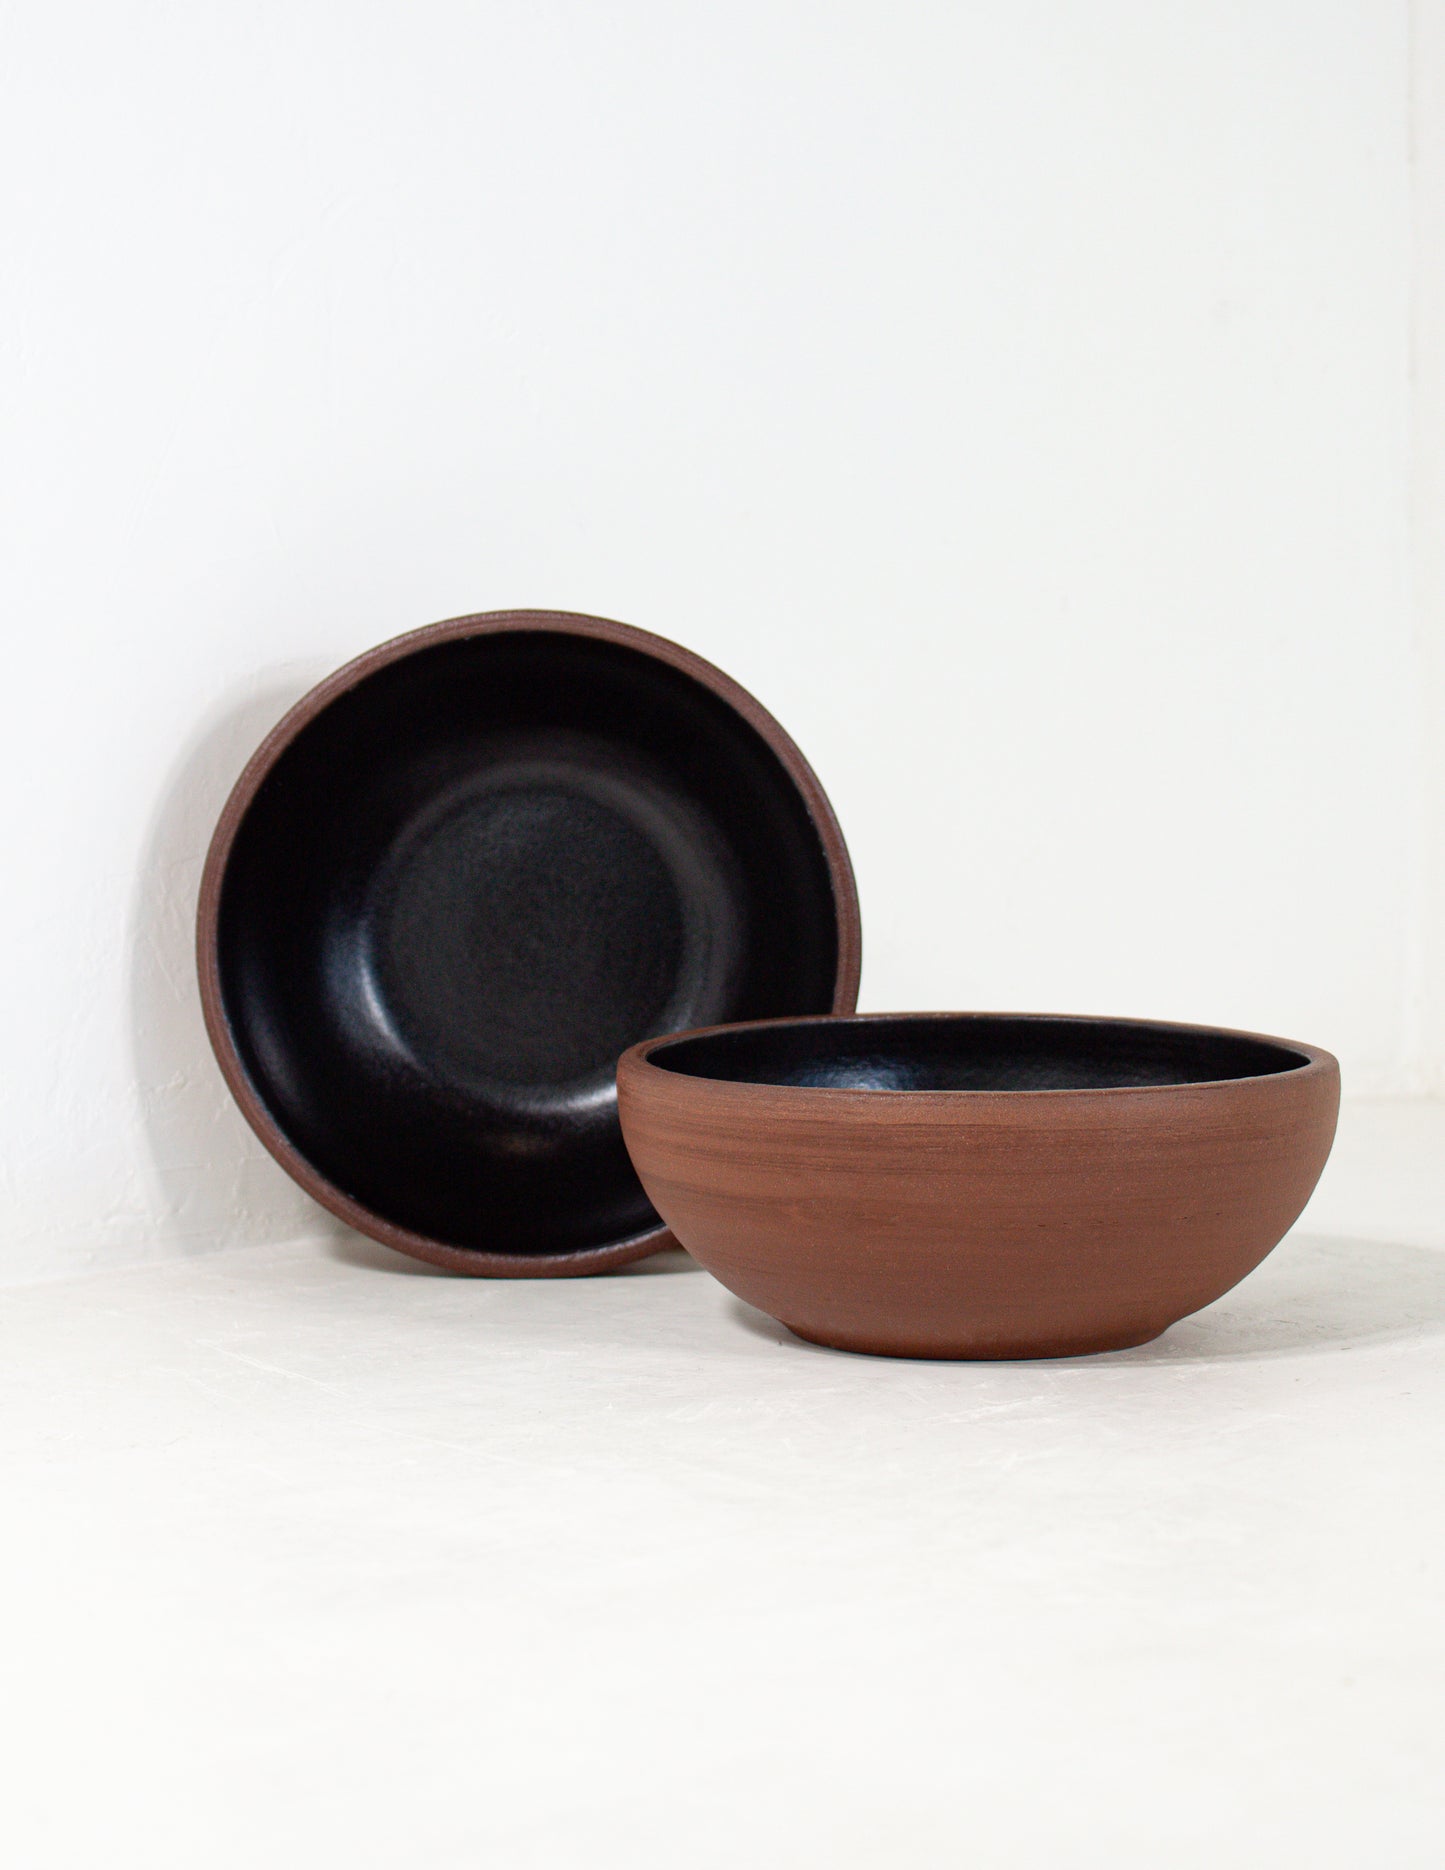 modern bowls for restaurants glazed in black